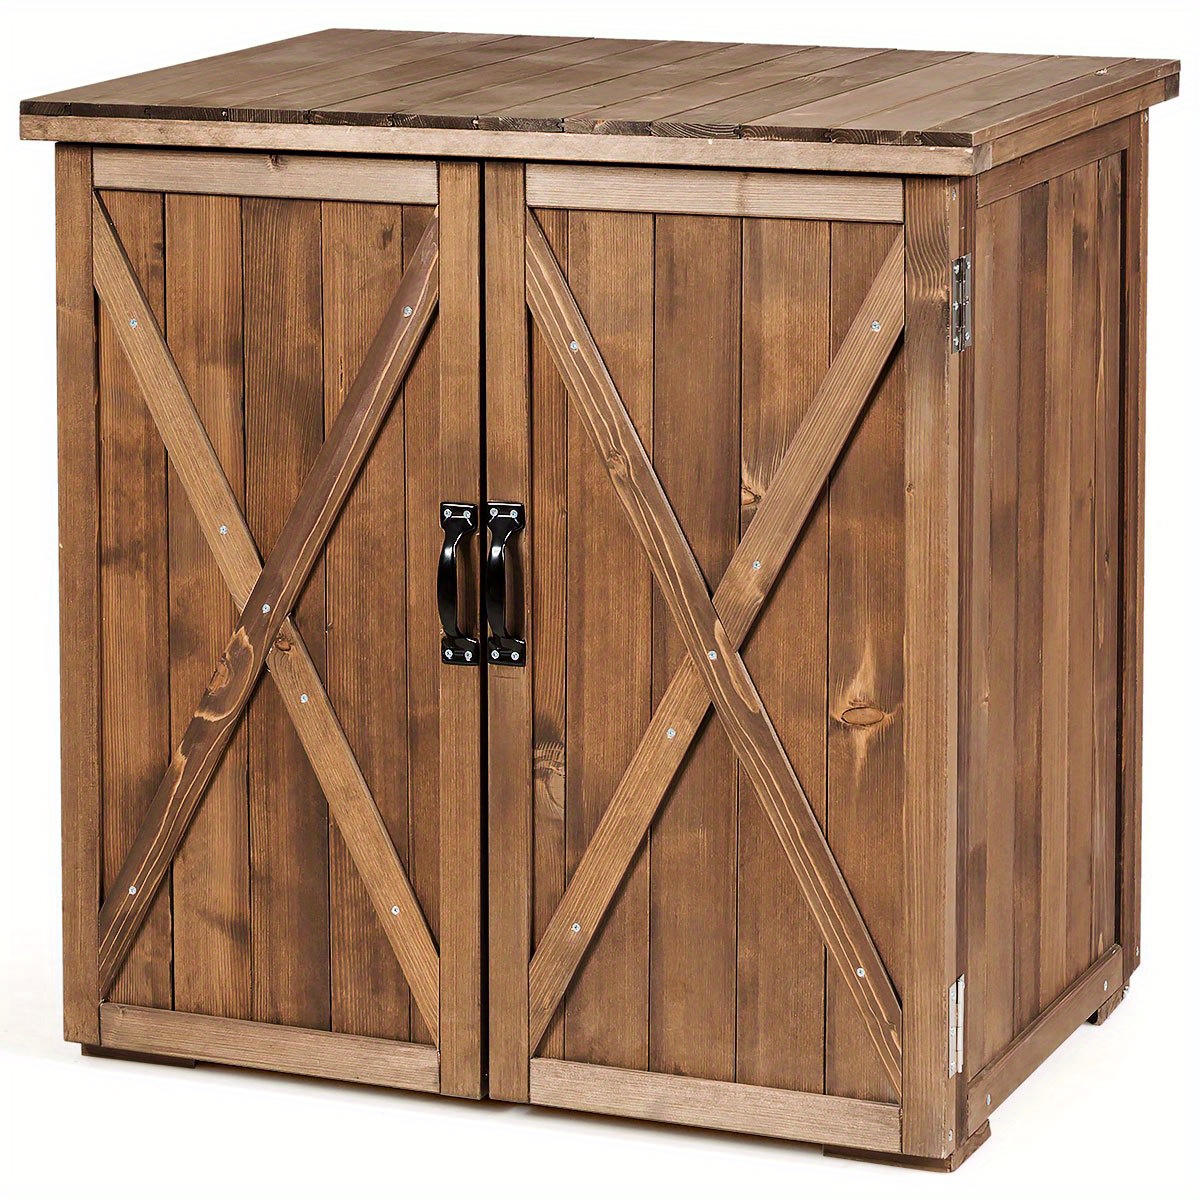 

Costway 2.5 X 2 Ft Wooden Storage Shed Cabinet W/ Double Doors Indoor